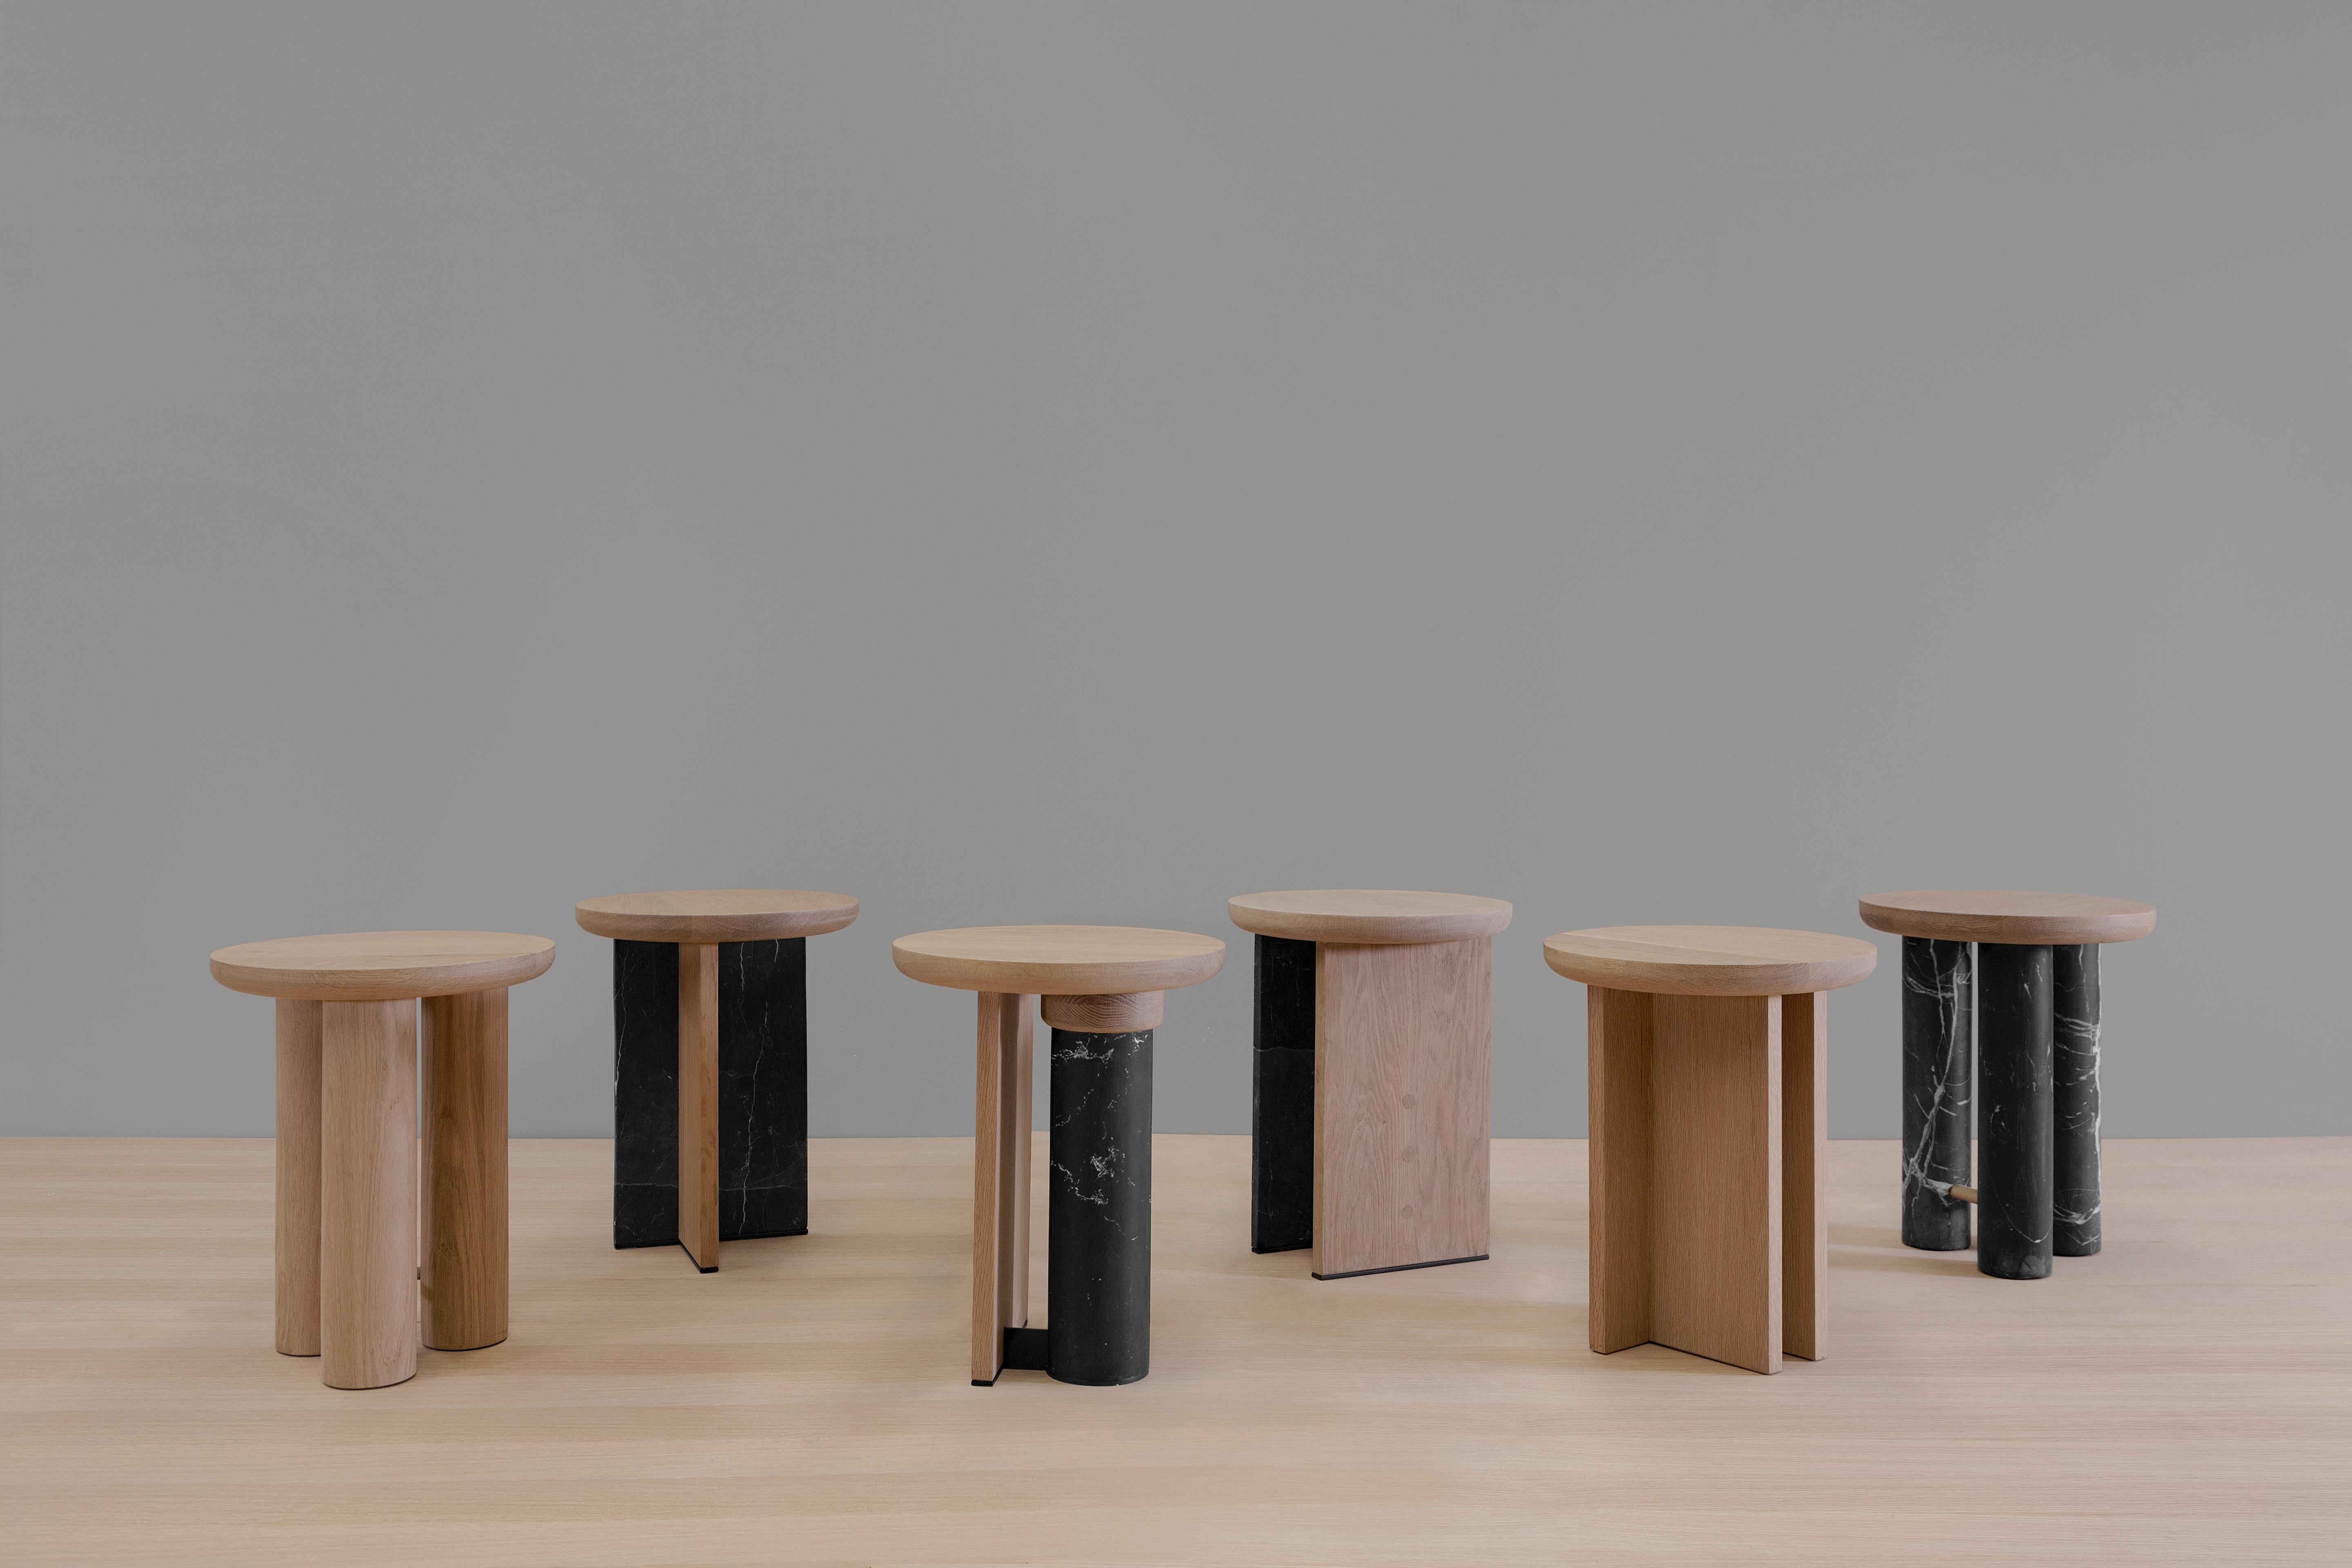 Antropología ist eine minimalistische Möbelkollektion, die der in Mexiko-Stadt ansässige Designer Raul de la Cerda für BREUER entworfen hat. BREUER ist das führende Unternehmen im Bereich Design und Herstellung von maßgefertigten Möbeln und Räumen